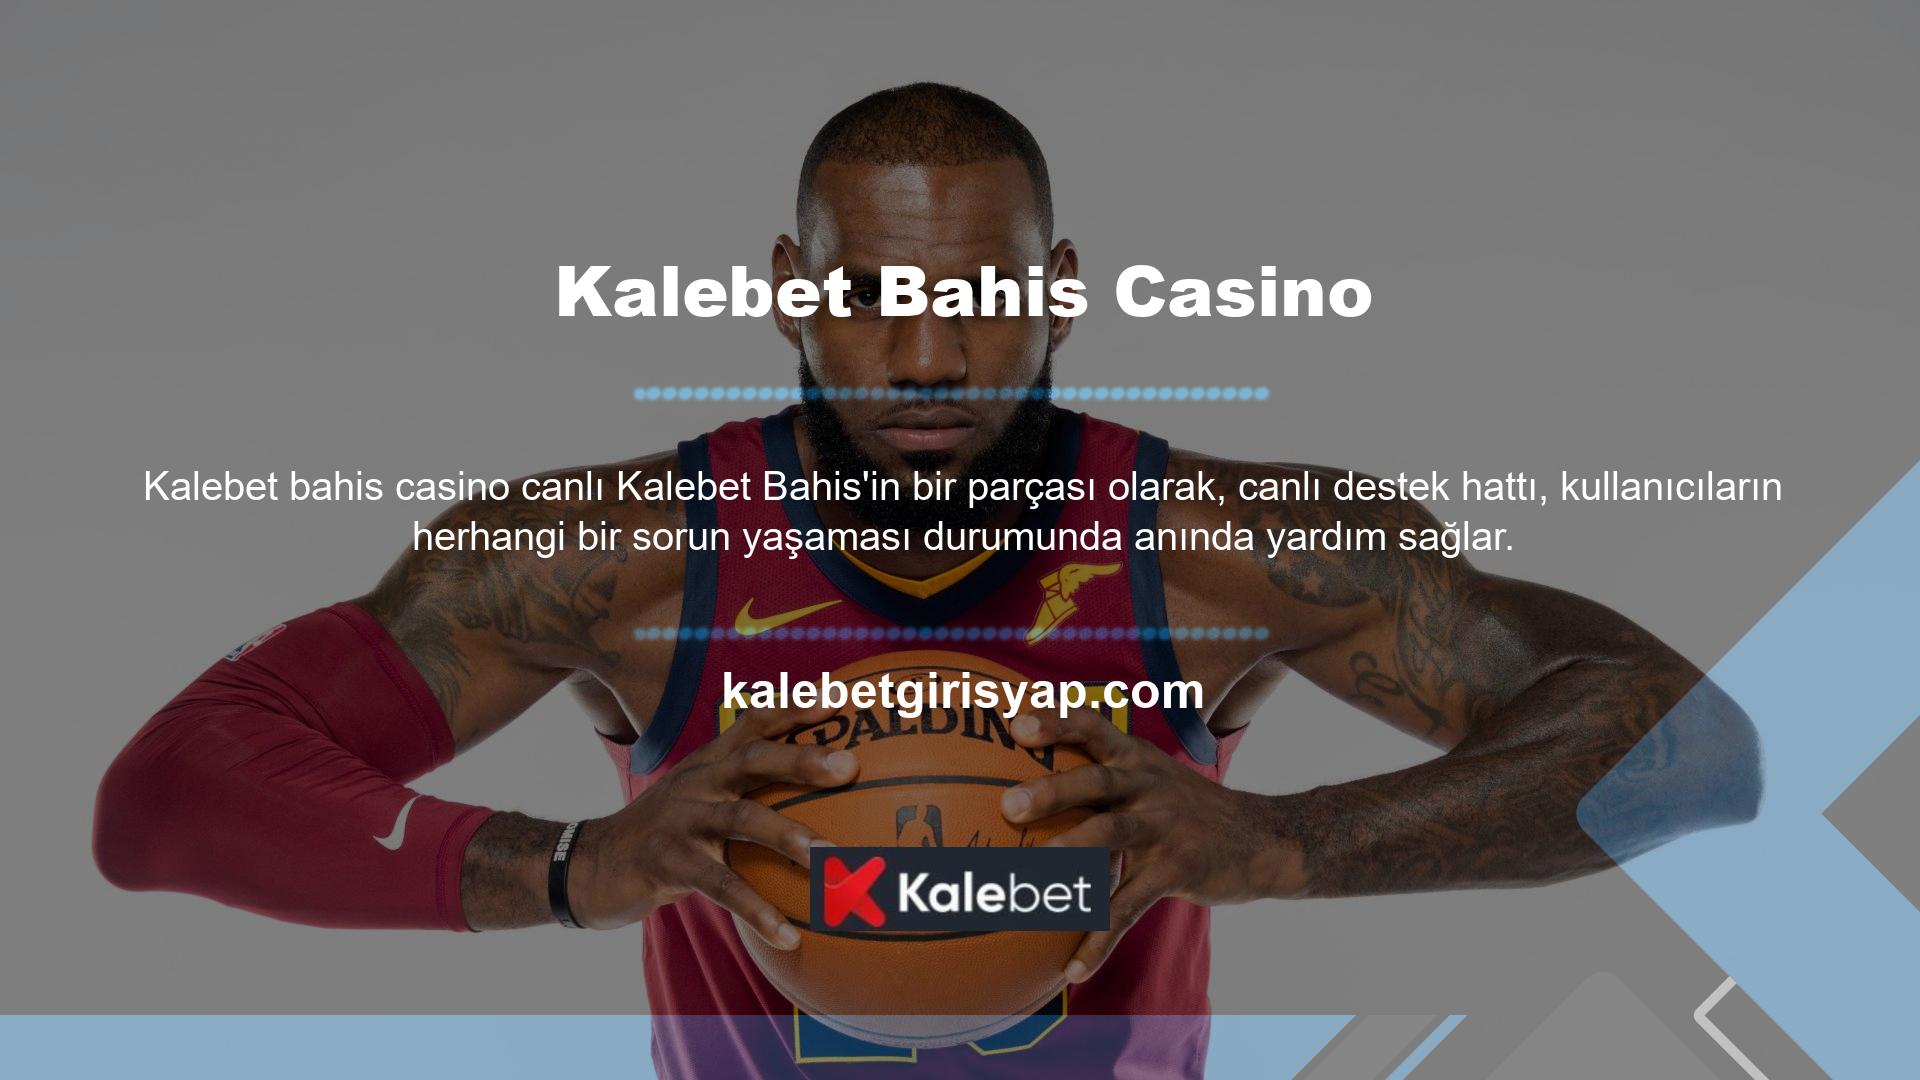 Canlı destek hattımız Kalebet Bahis Casino hizmetlerini 7/24 sunmaktadır